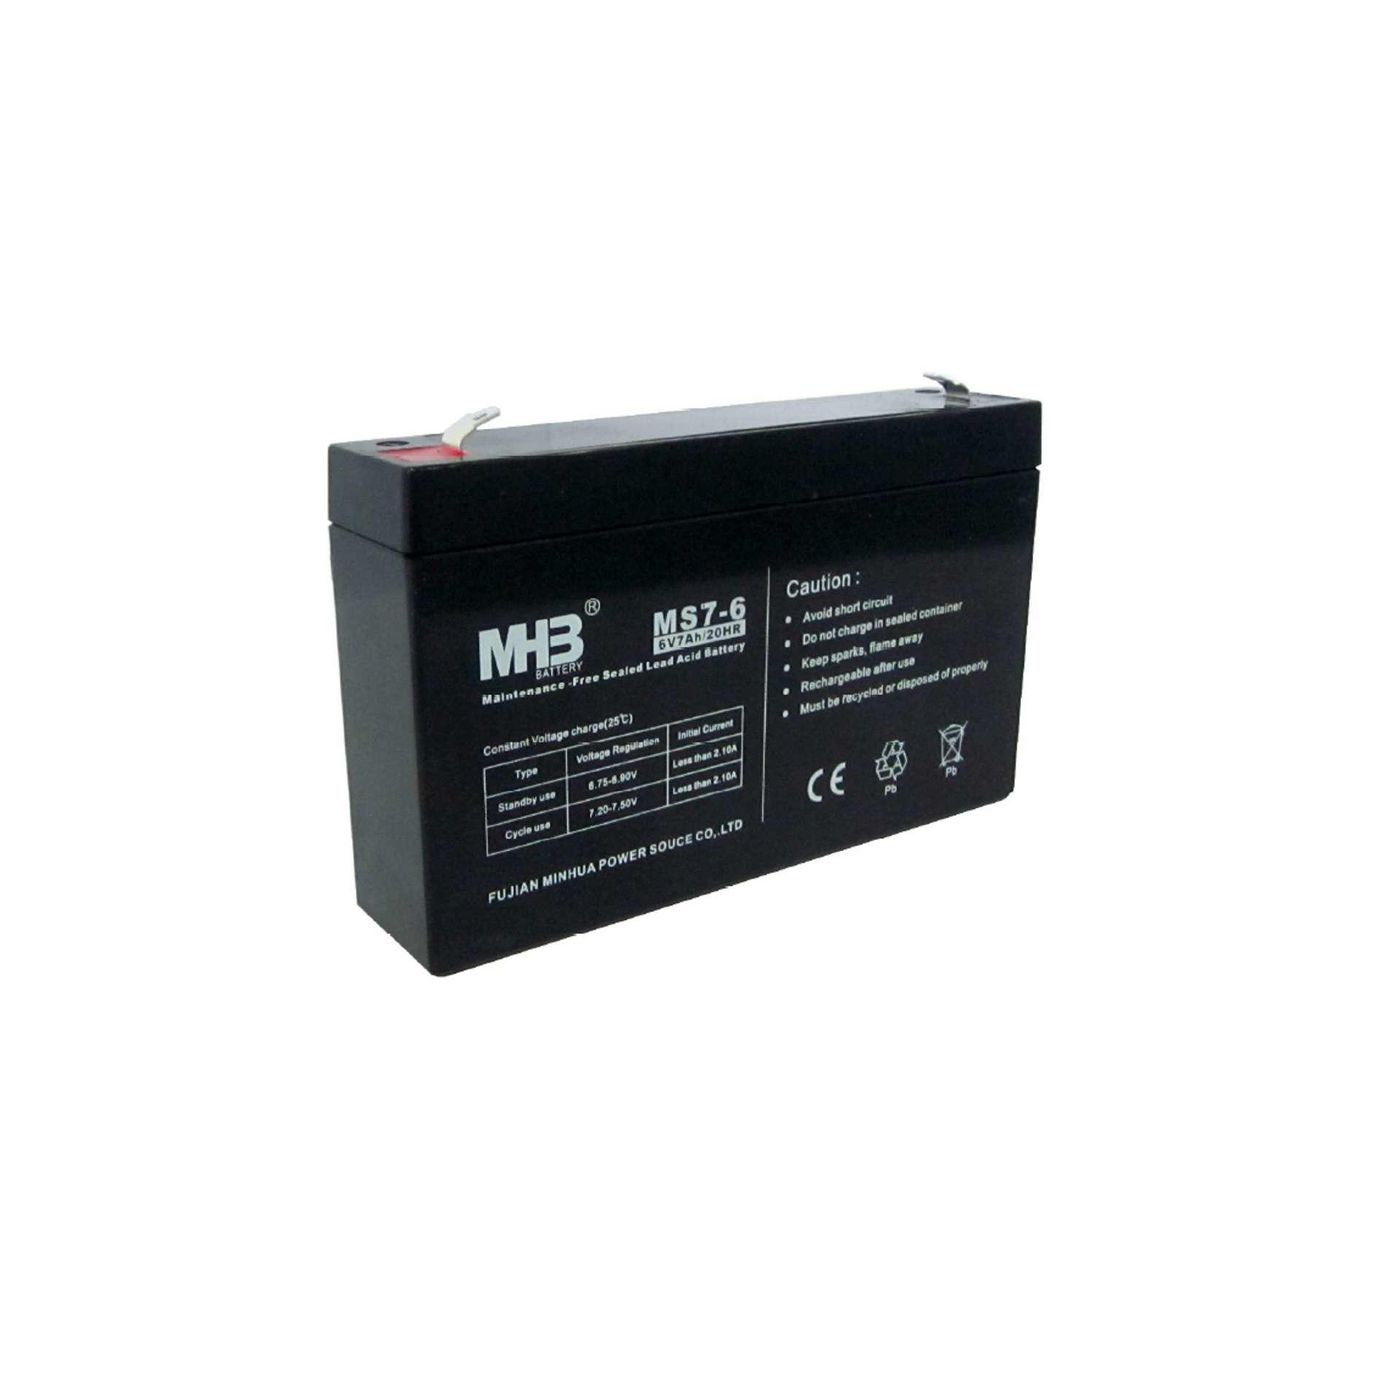 PowerWalker 91010142 W127378464 Battery MHB MS7-6, for VI 